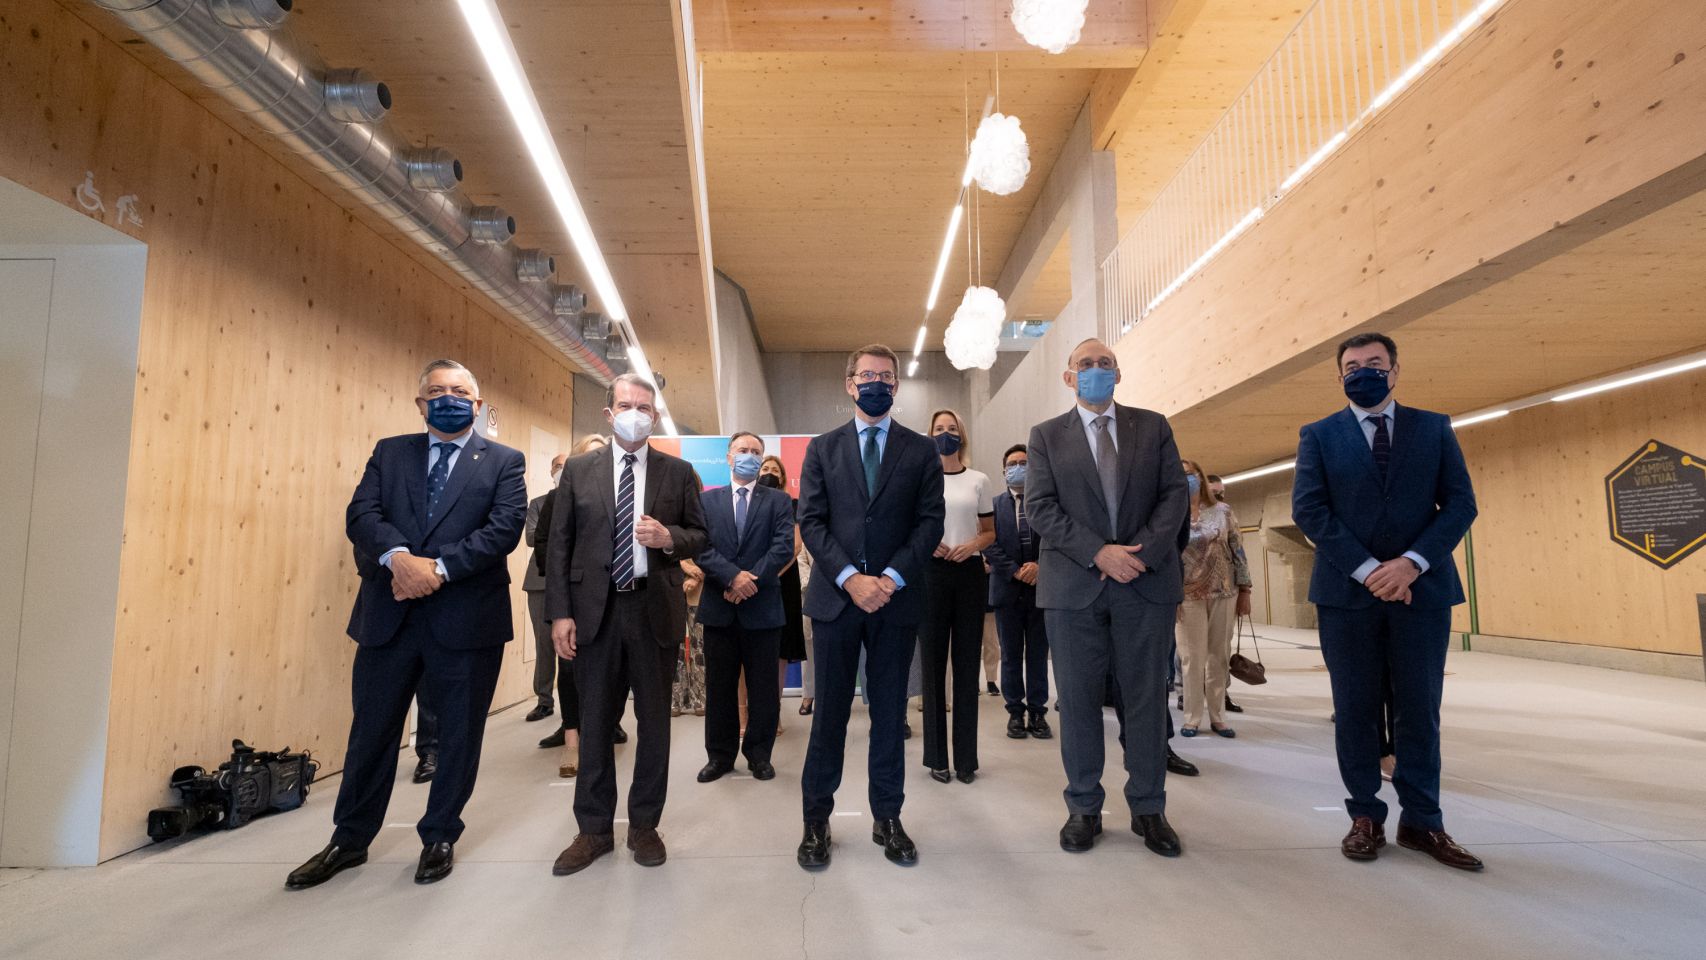 O presidente da Xunta y el alcalde de Vigo, entre otras autoridades, participaron en el acto de inauguración.